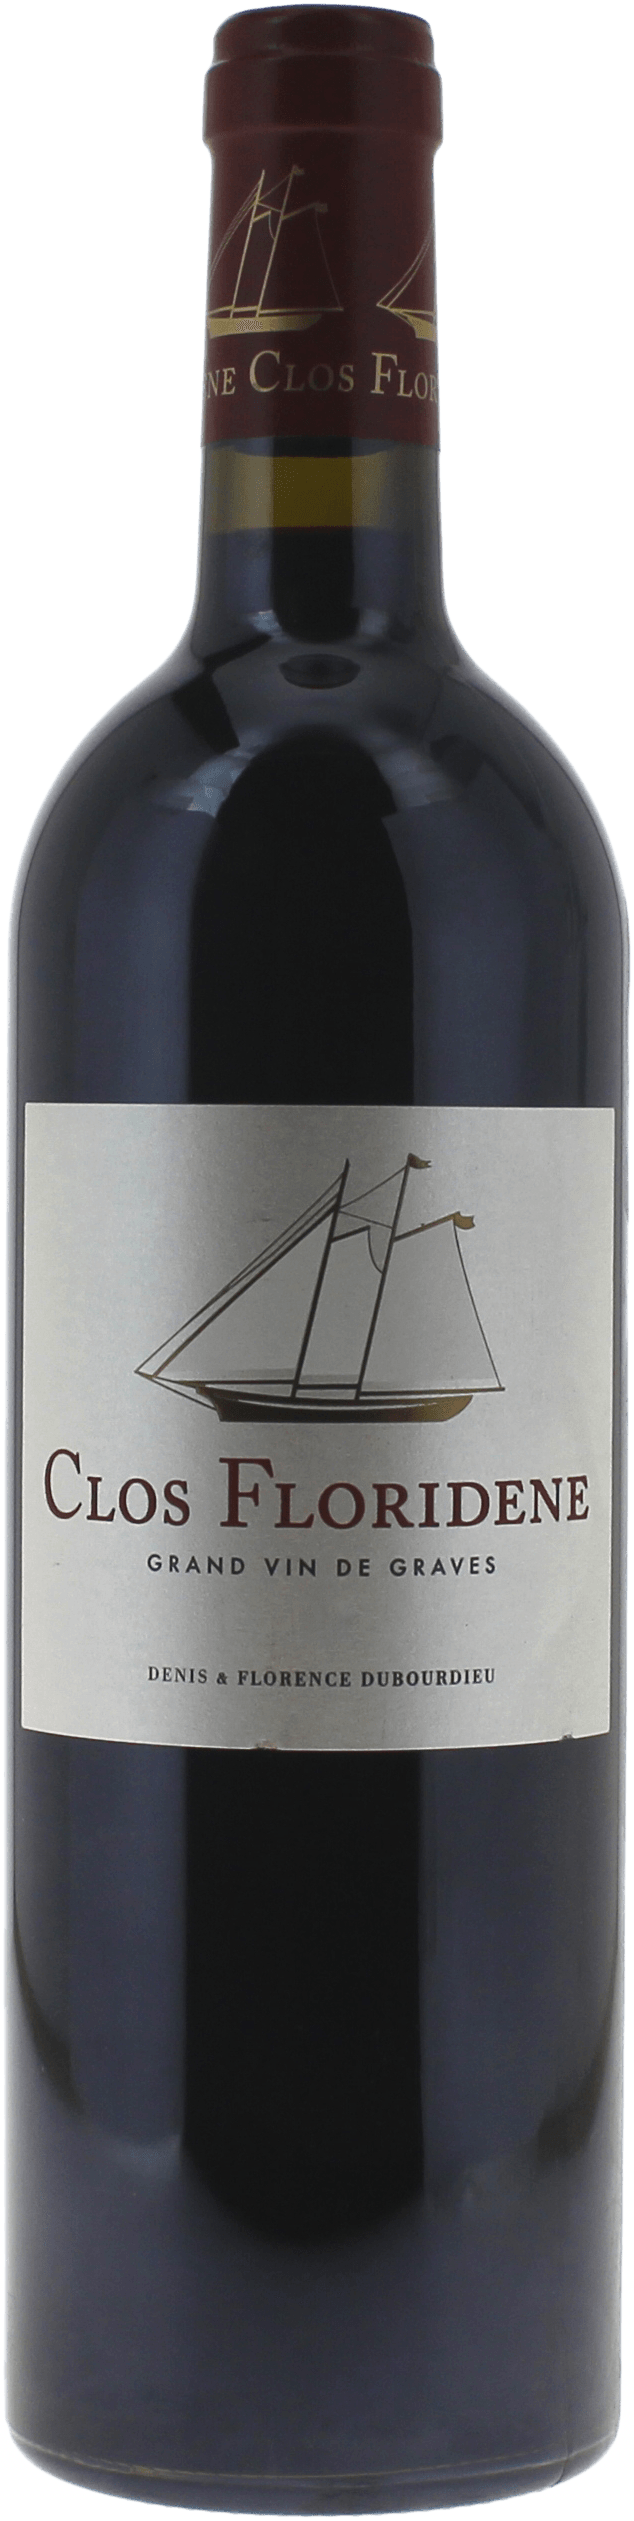 Clos floridne rouge 2016  Graves, Bordeaux rouge